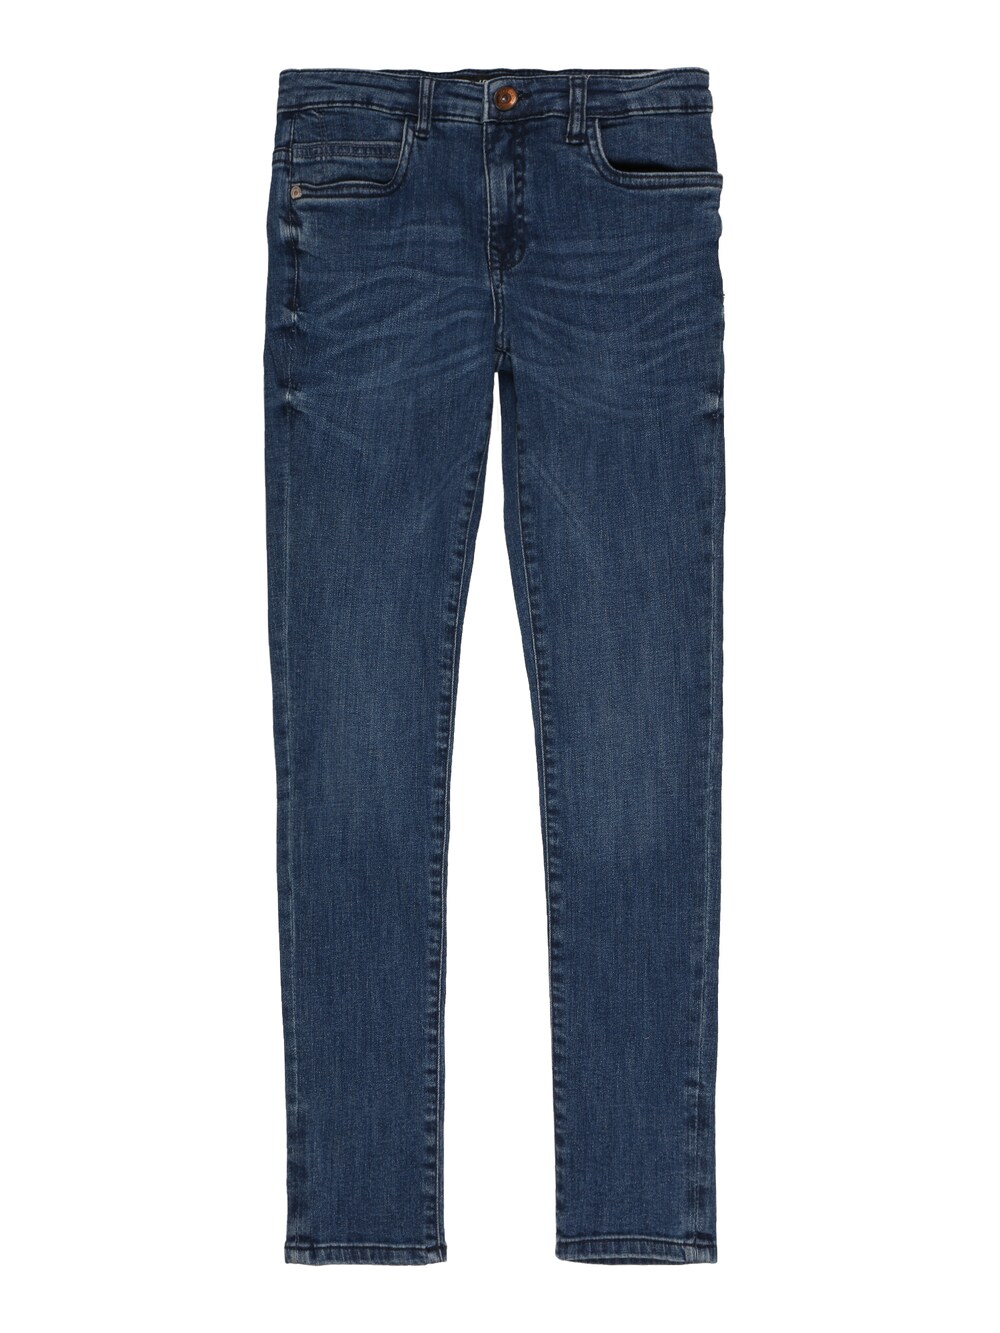 Обычные джинсы Cars Jeans CLEVELAND, синий